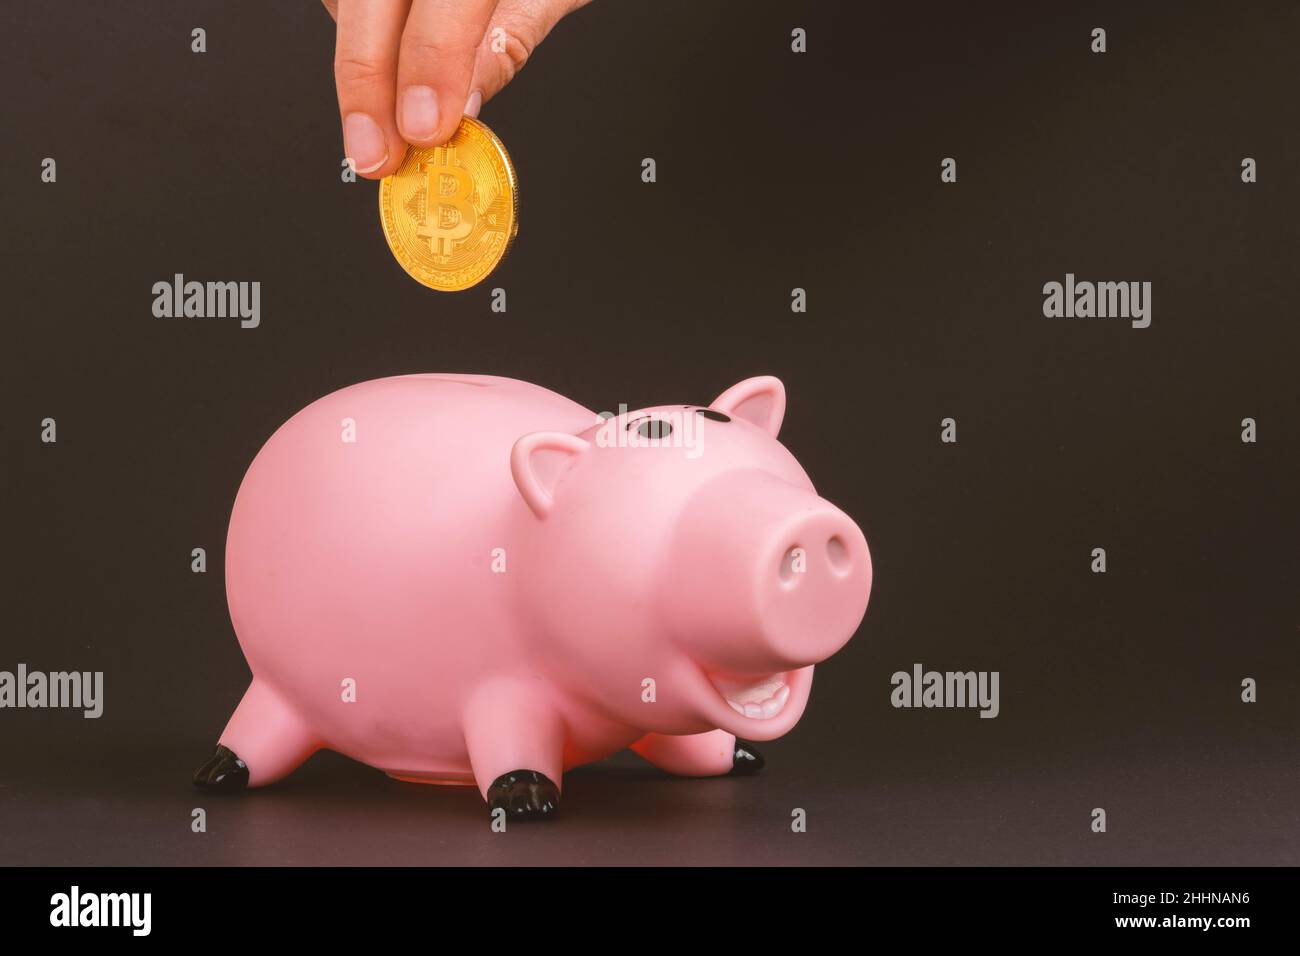 Digital Bitcoin Piggy Coin banca di salvataggio concetto: Mano umana che tiene Golden BTC cripto sopra rosa giocattolo plastica maialino scatola di denaro. Sfondo nero per il texting Foto Stock